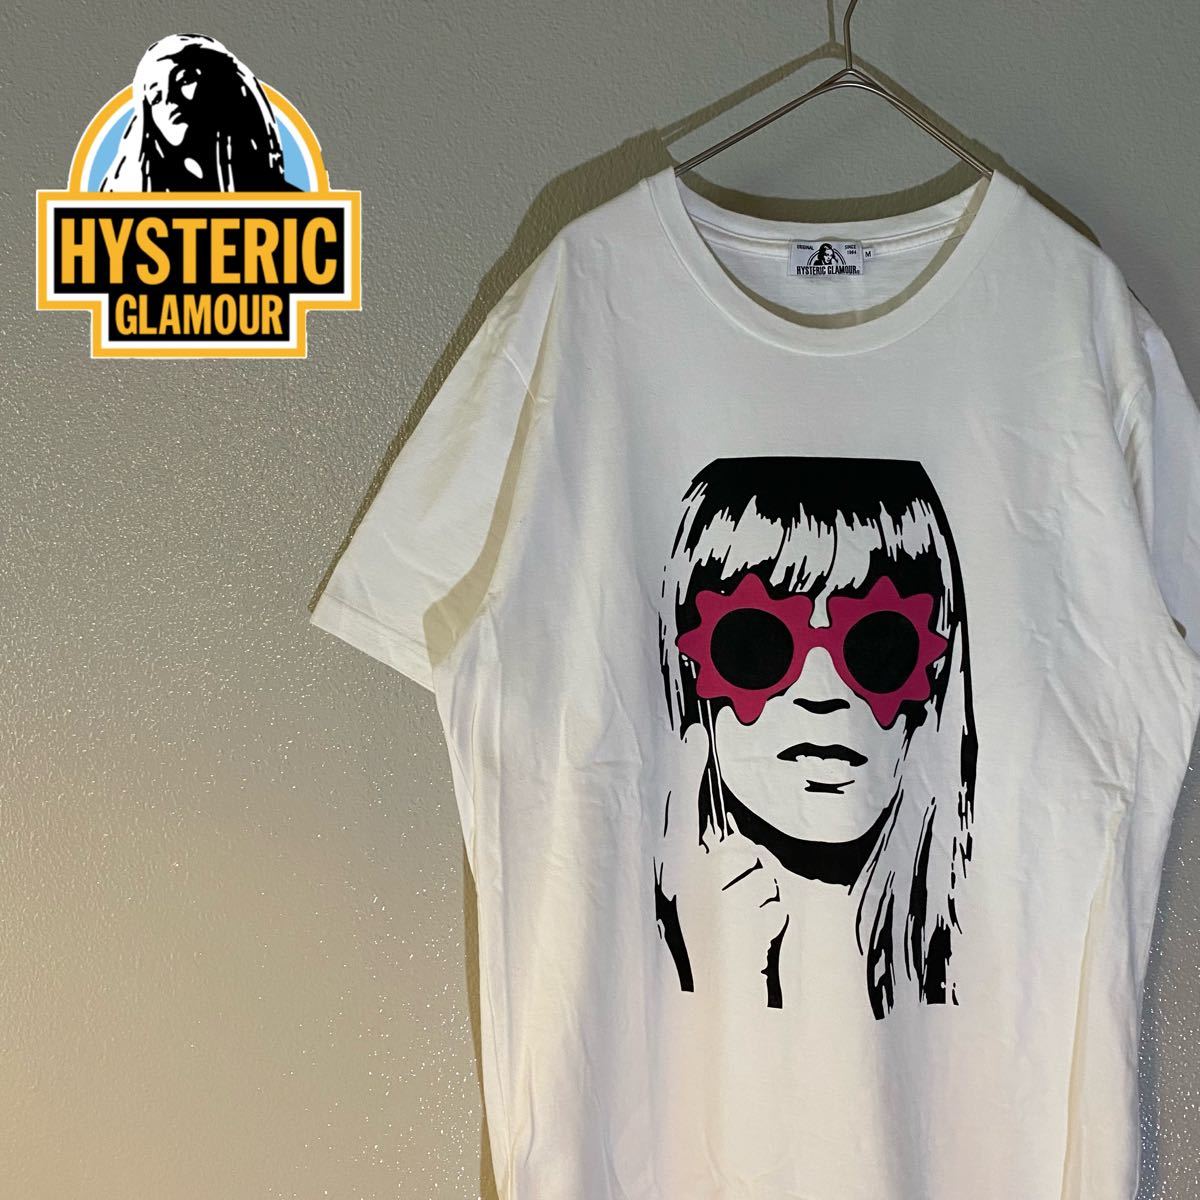 【大人気】ヒステリックグラマー HYSTERIC GLAMOUR 半袖Tシャツ ビックロゴプリント ホワイト ガール 女性 顔